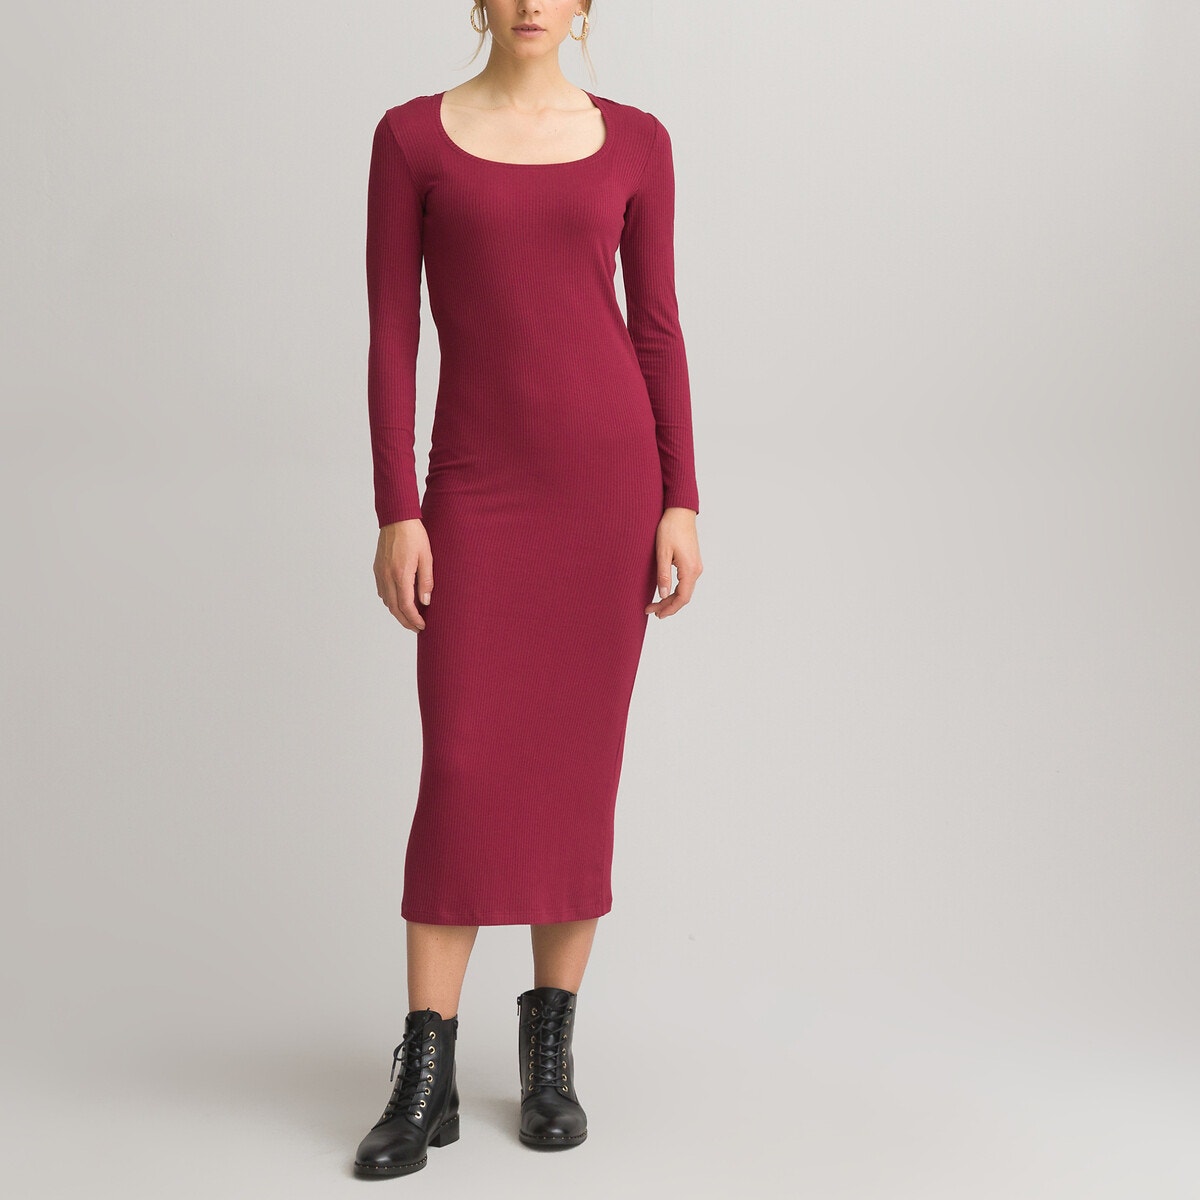 ΓΥΝΑΙΚΑ | Φορέματα | Μακριά ή 3/4 μανίκια Μακρύ εφαρμοστό φόρεμα με τετράγωνη λαιμόκοψη